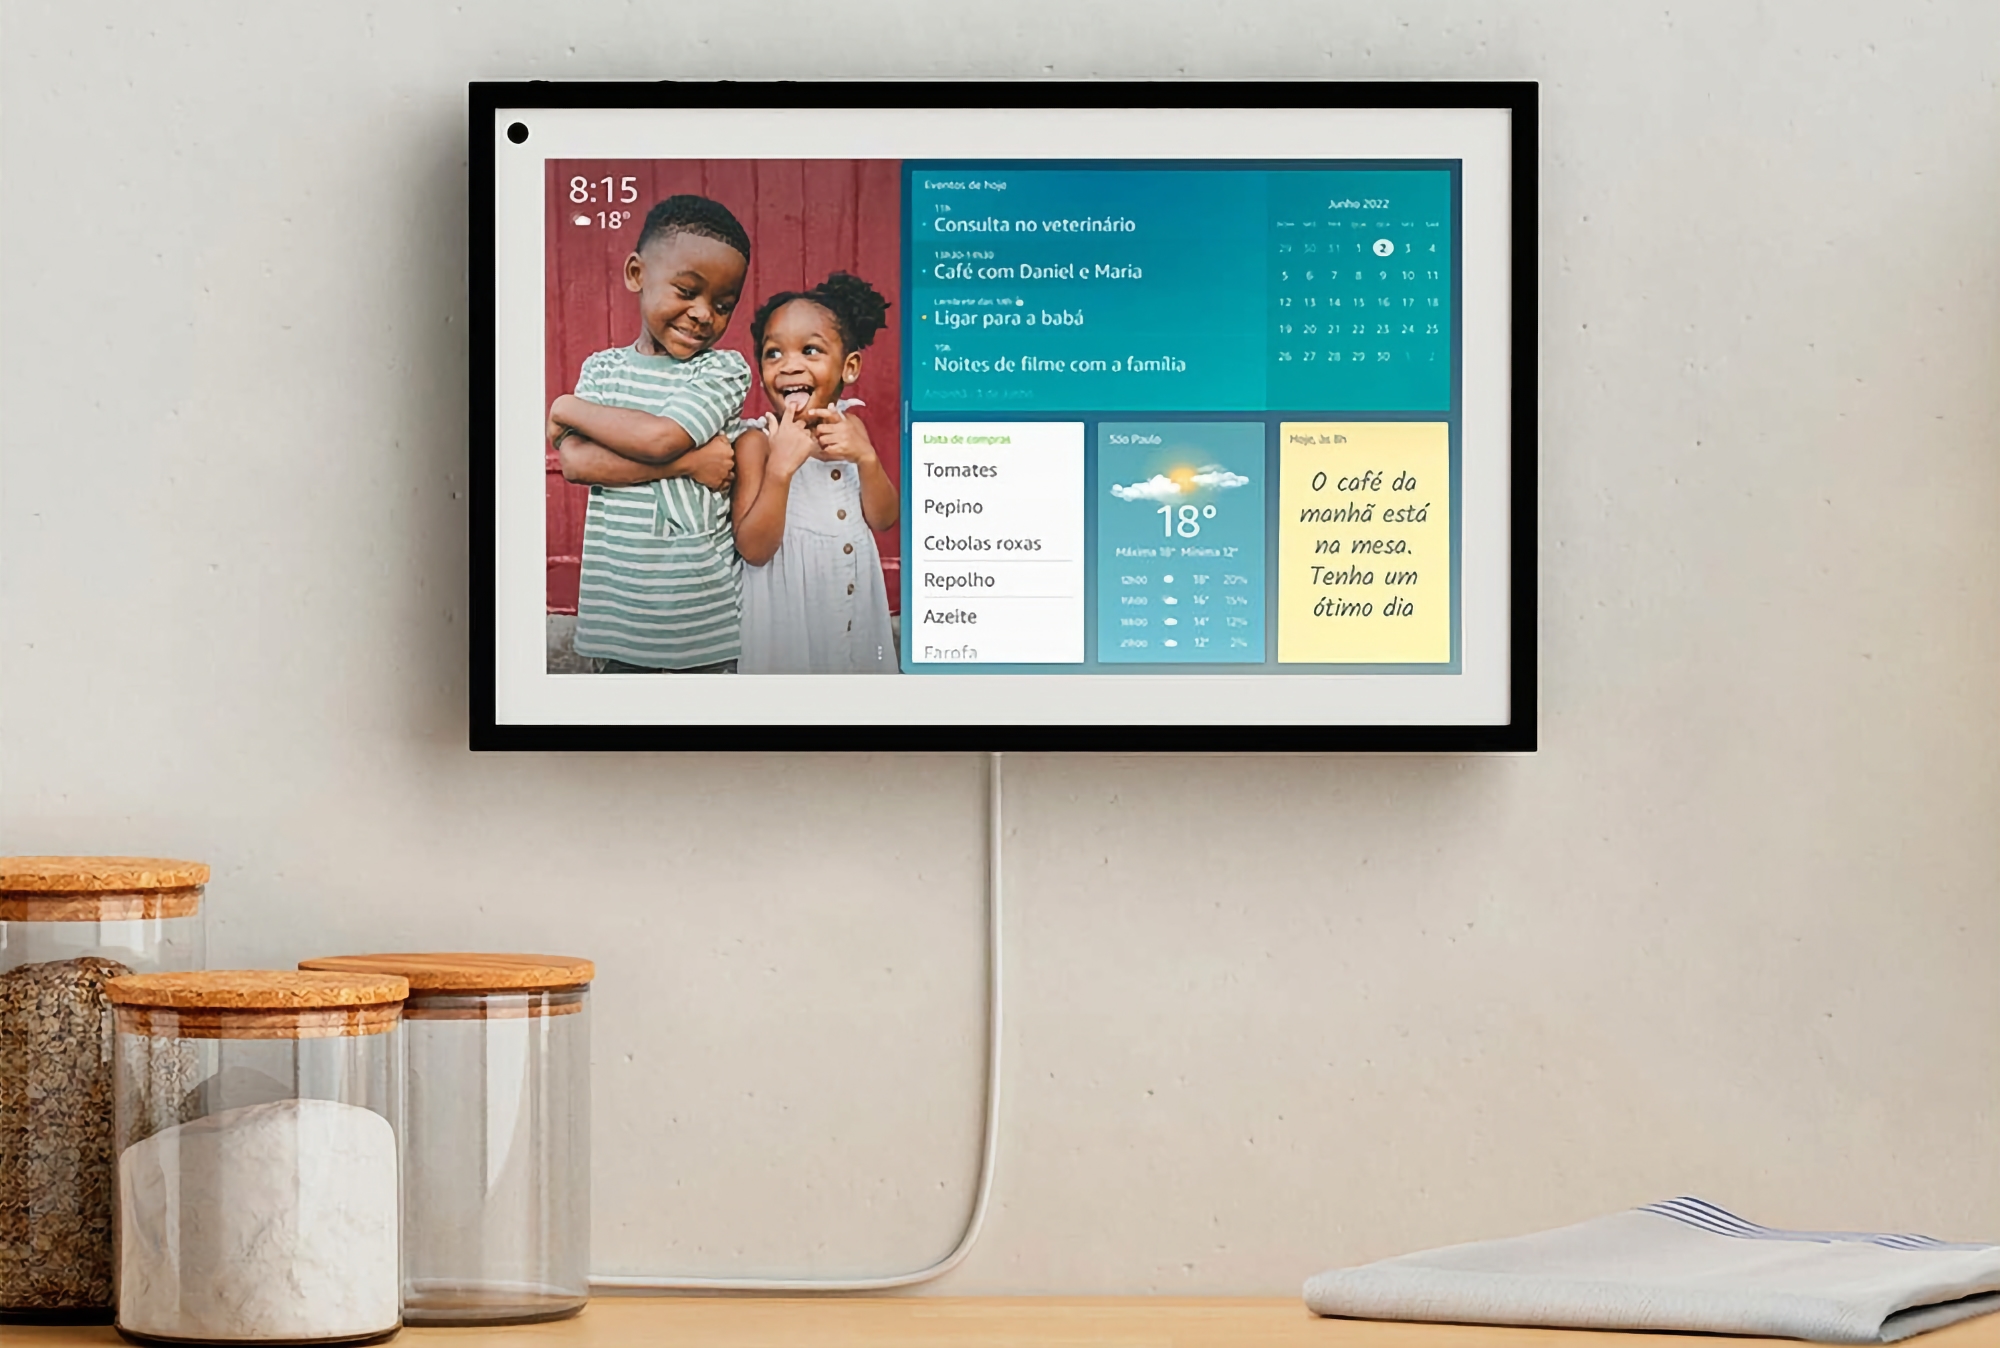 Amazon verkoopt Echo Show 15 smart display met 15,6" scherm en Alexa stemassistent voor $80 korting